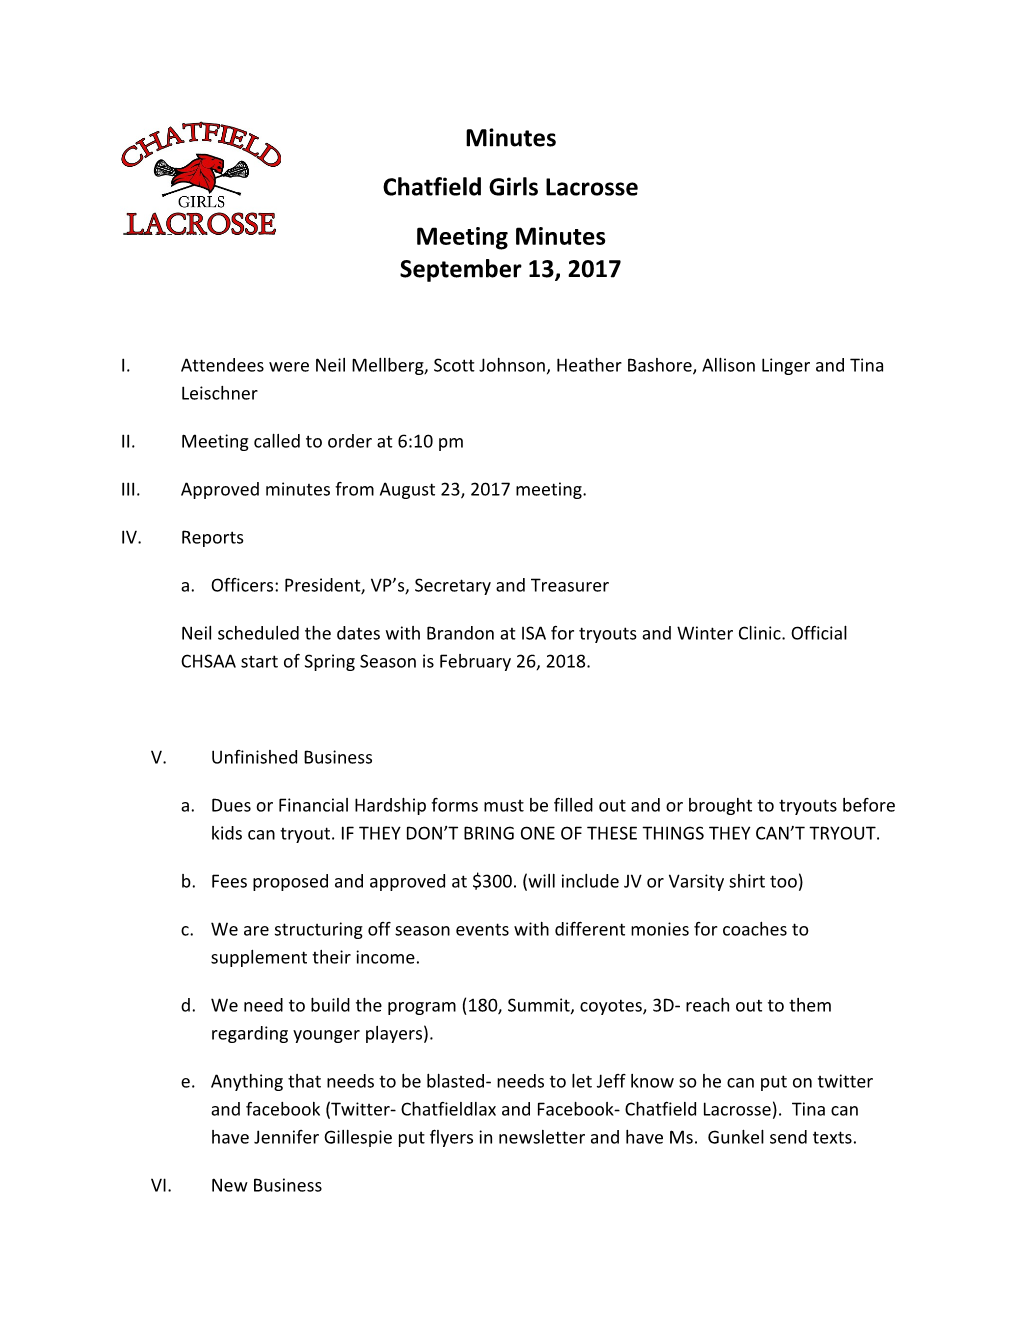 Chatfield Girls Lacrosse s1